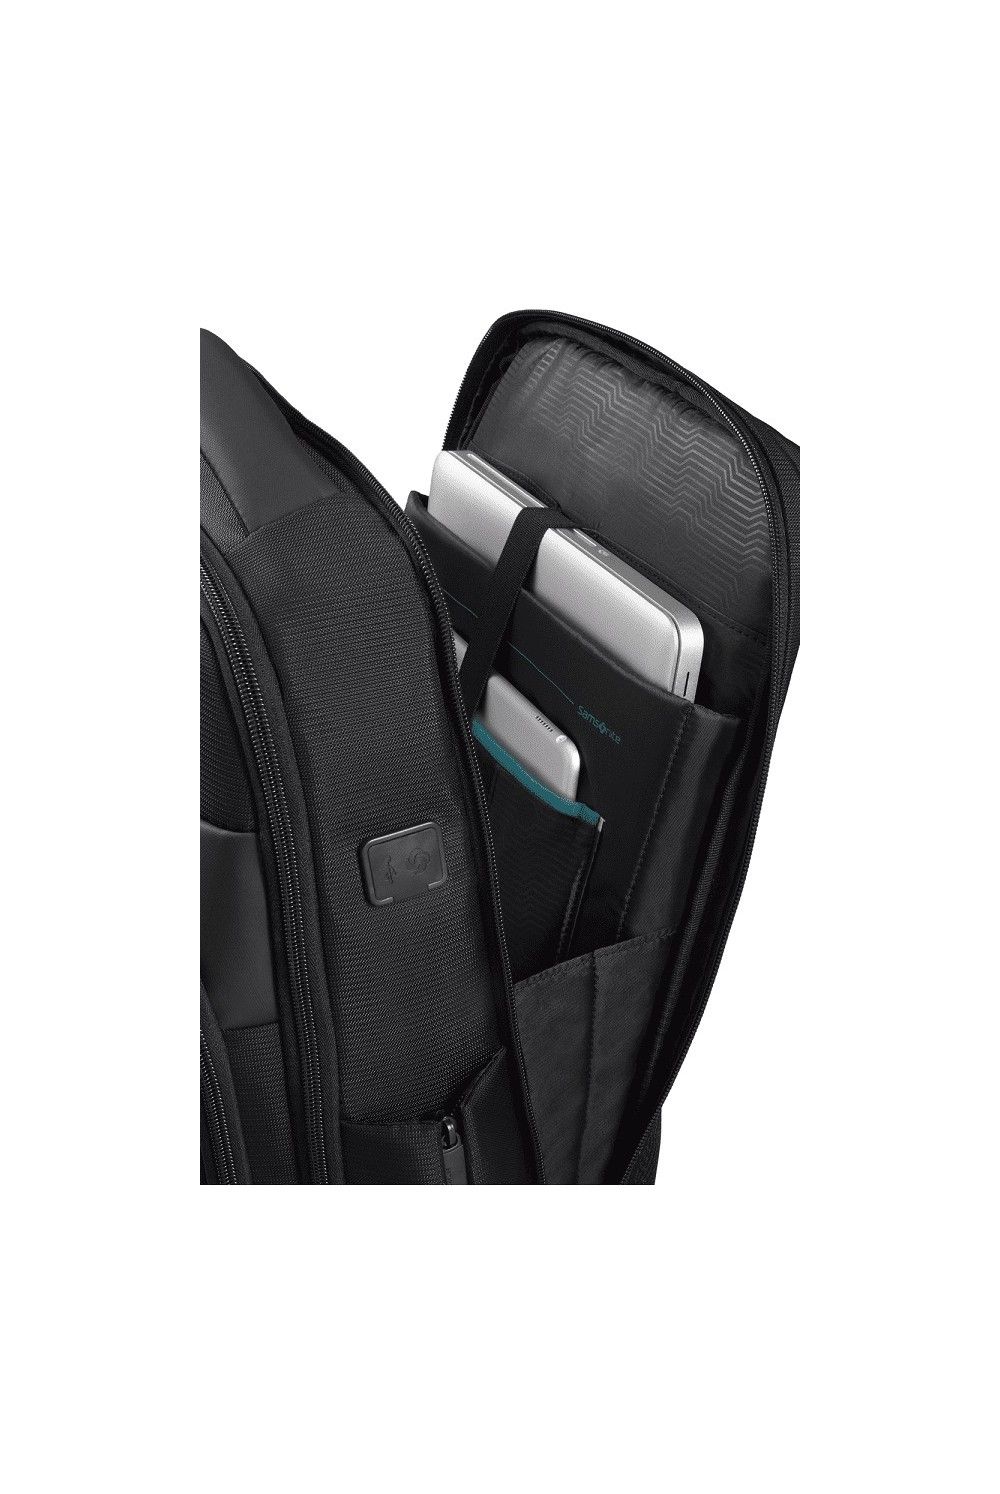 Samsonite Mysight sac à dos pour ordinateur portable 15.6 pouces